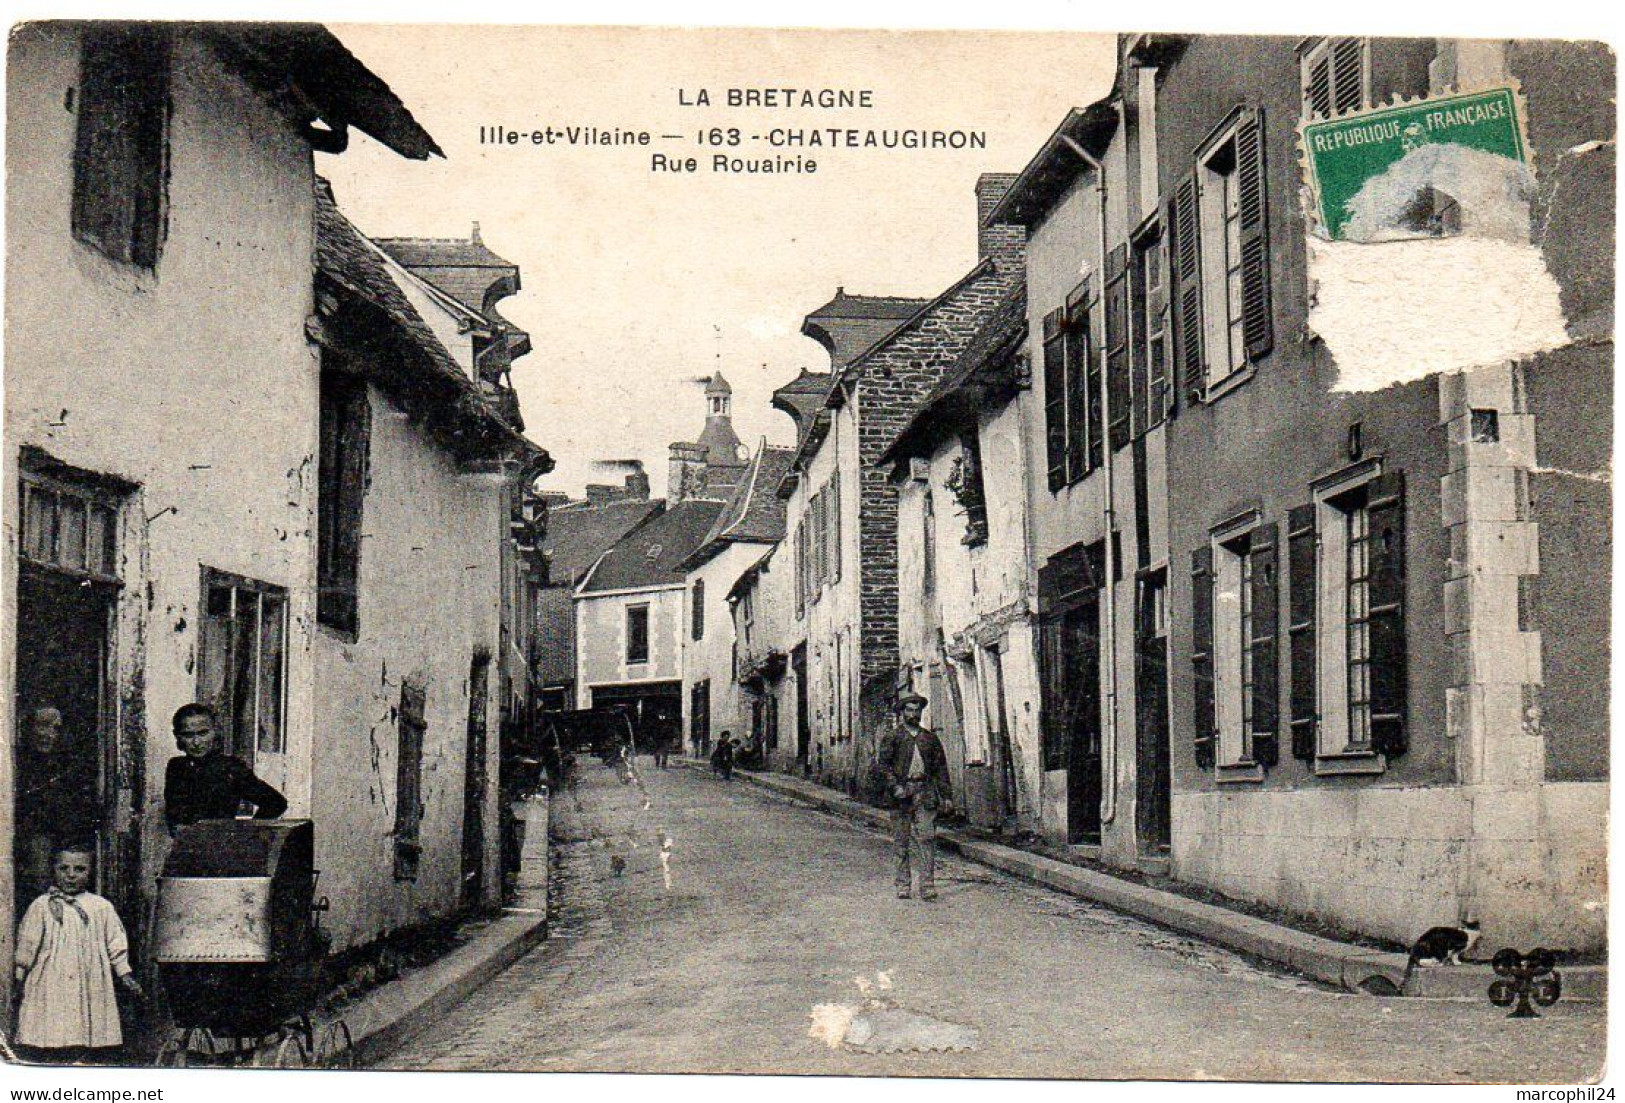 ILLE & VILAINE - Dépt N° 35 = CHATEAUGIRON = CPA écrite 1916 = RUE ROUAIRIE - Châteaugiron